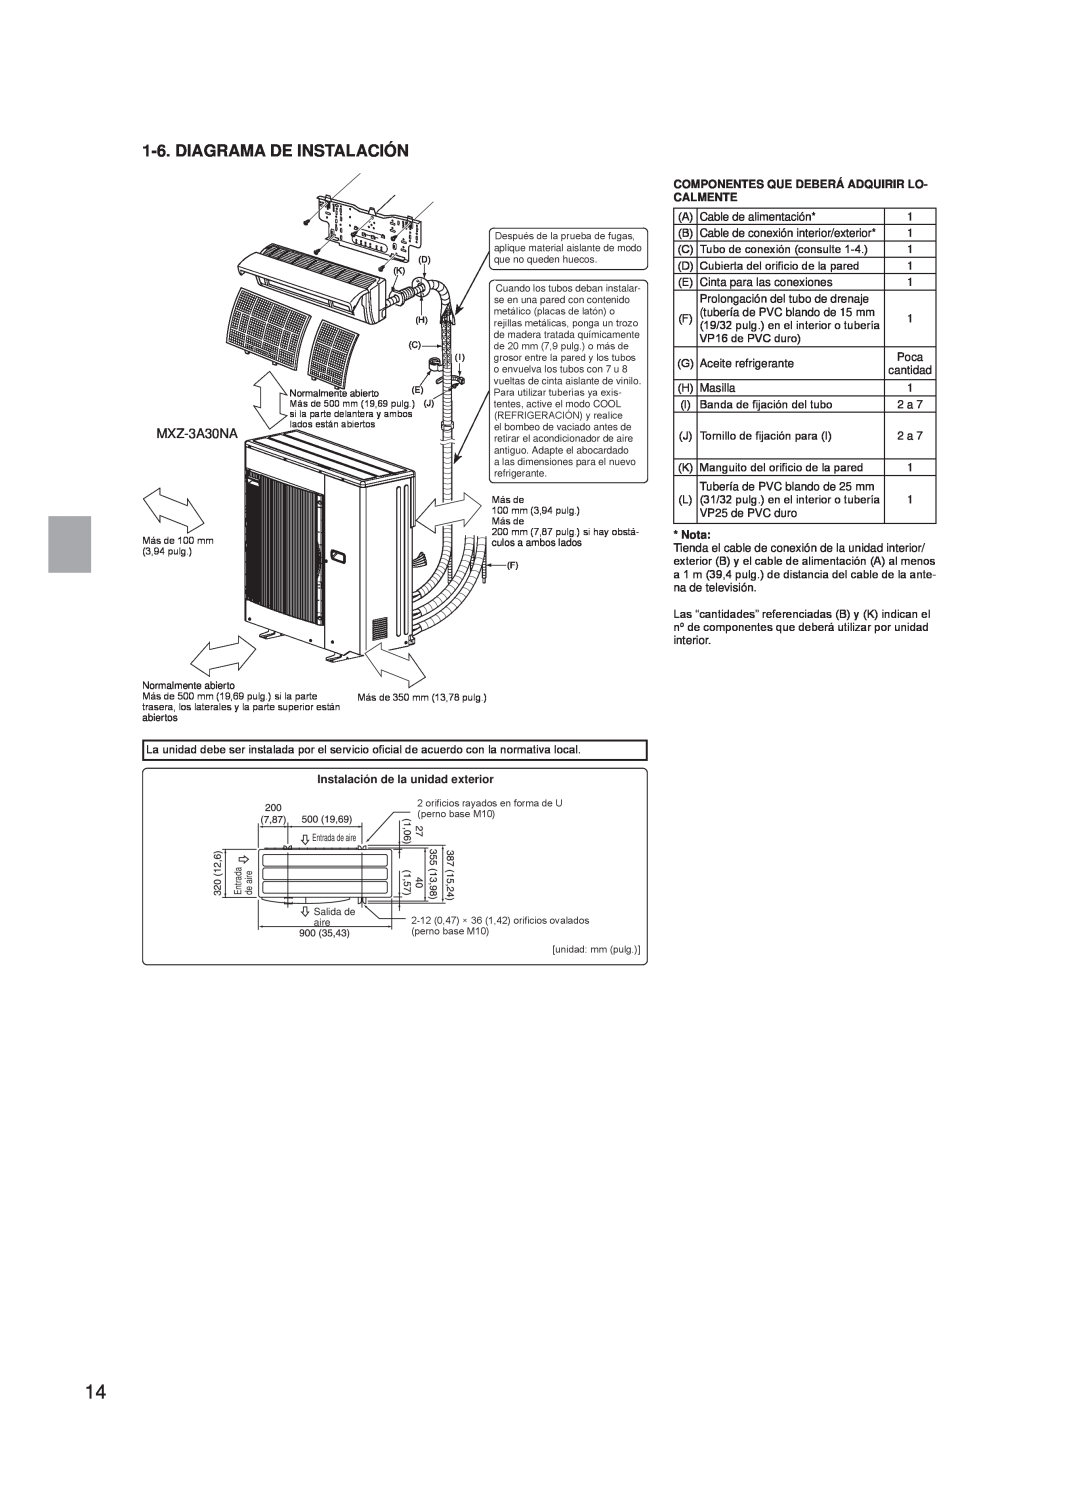 Troy-Bilt MXZ-3A30NA, MXZ-4A36NA Diagrama De Instalación, Componentes Que Deberá Adquirir Lo- Calmente, Nota 